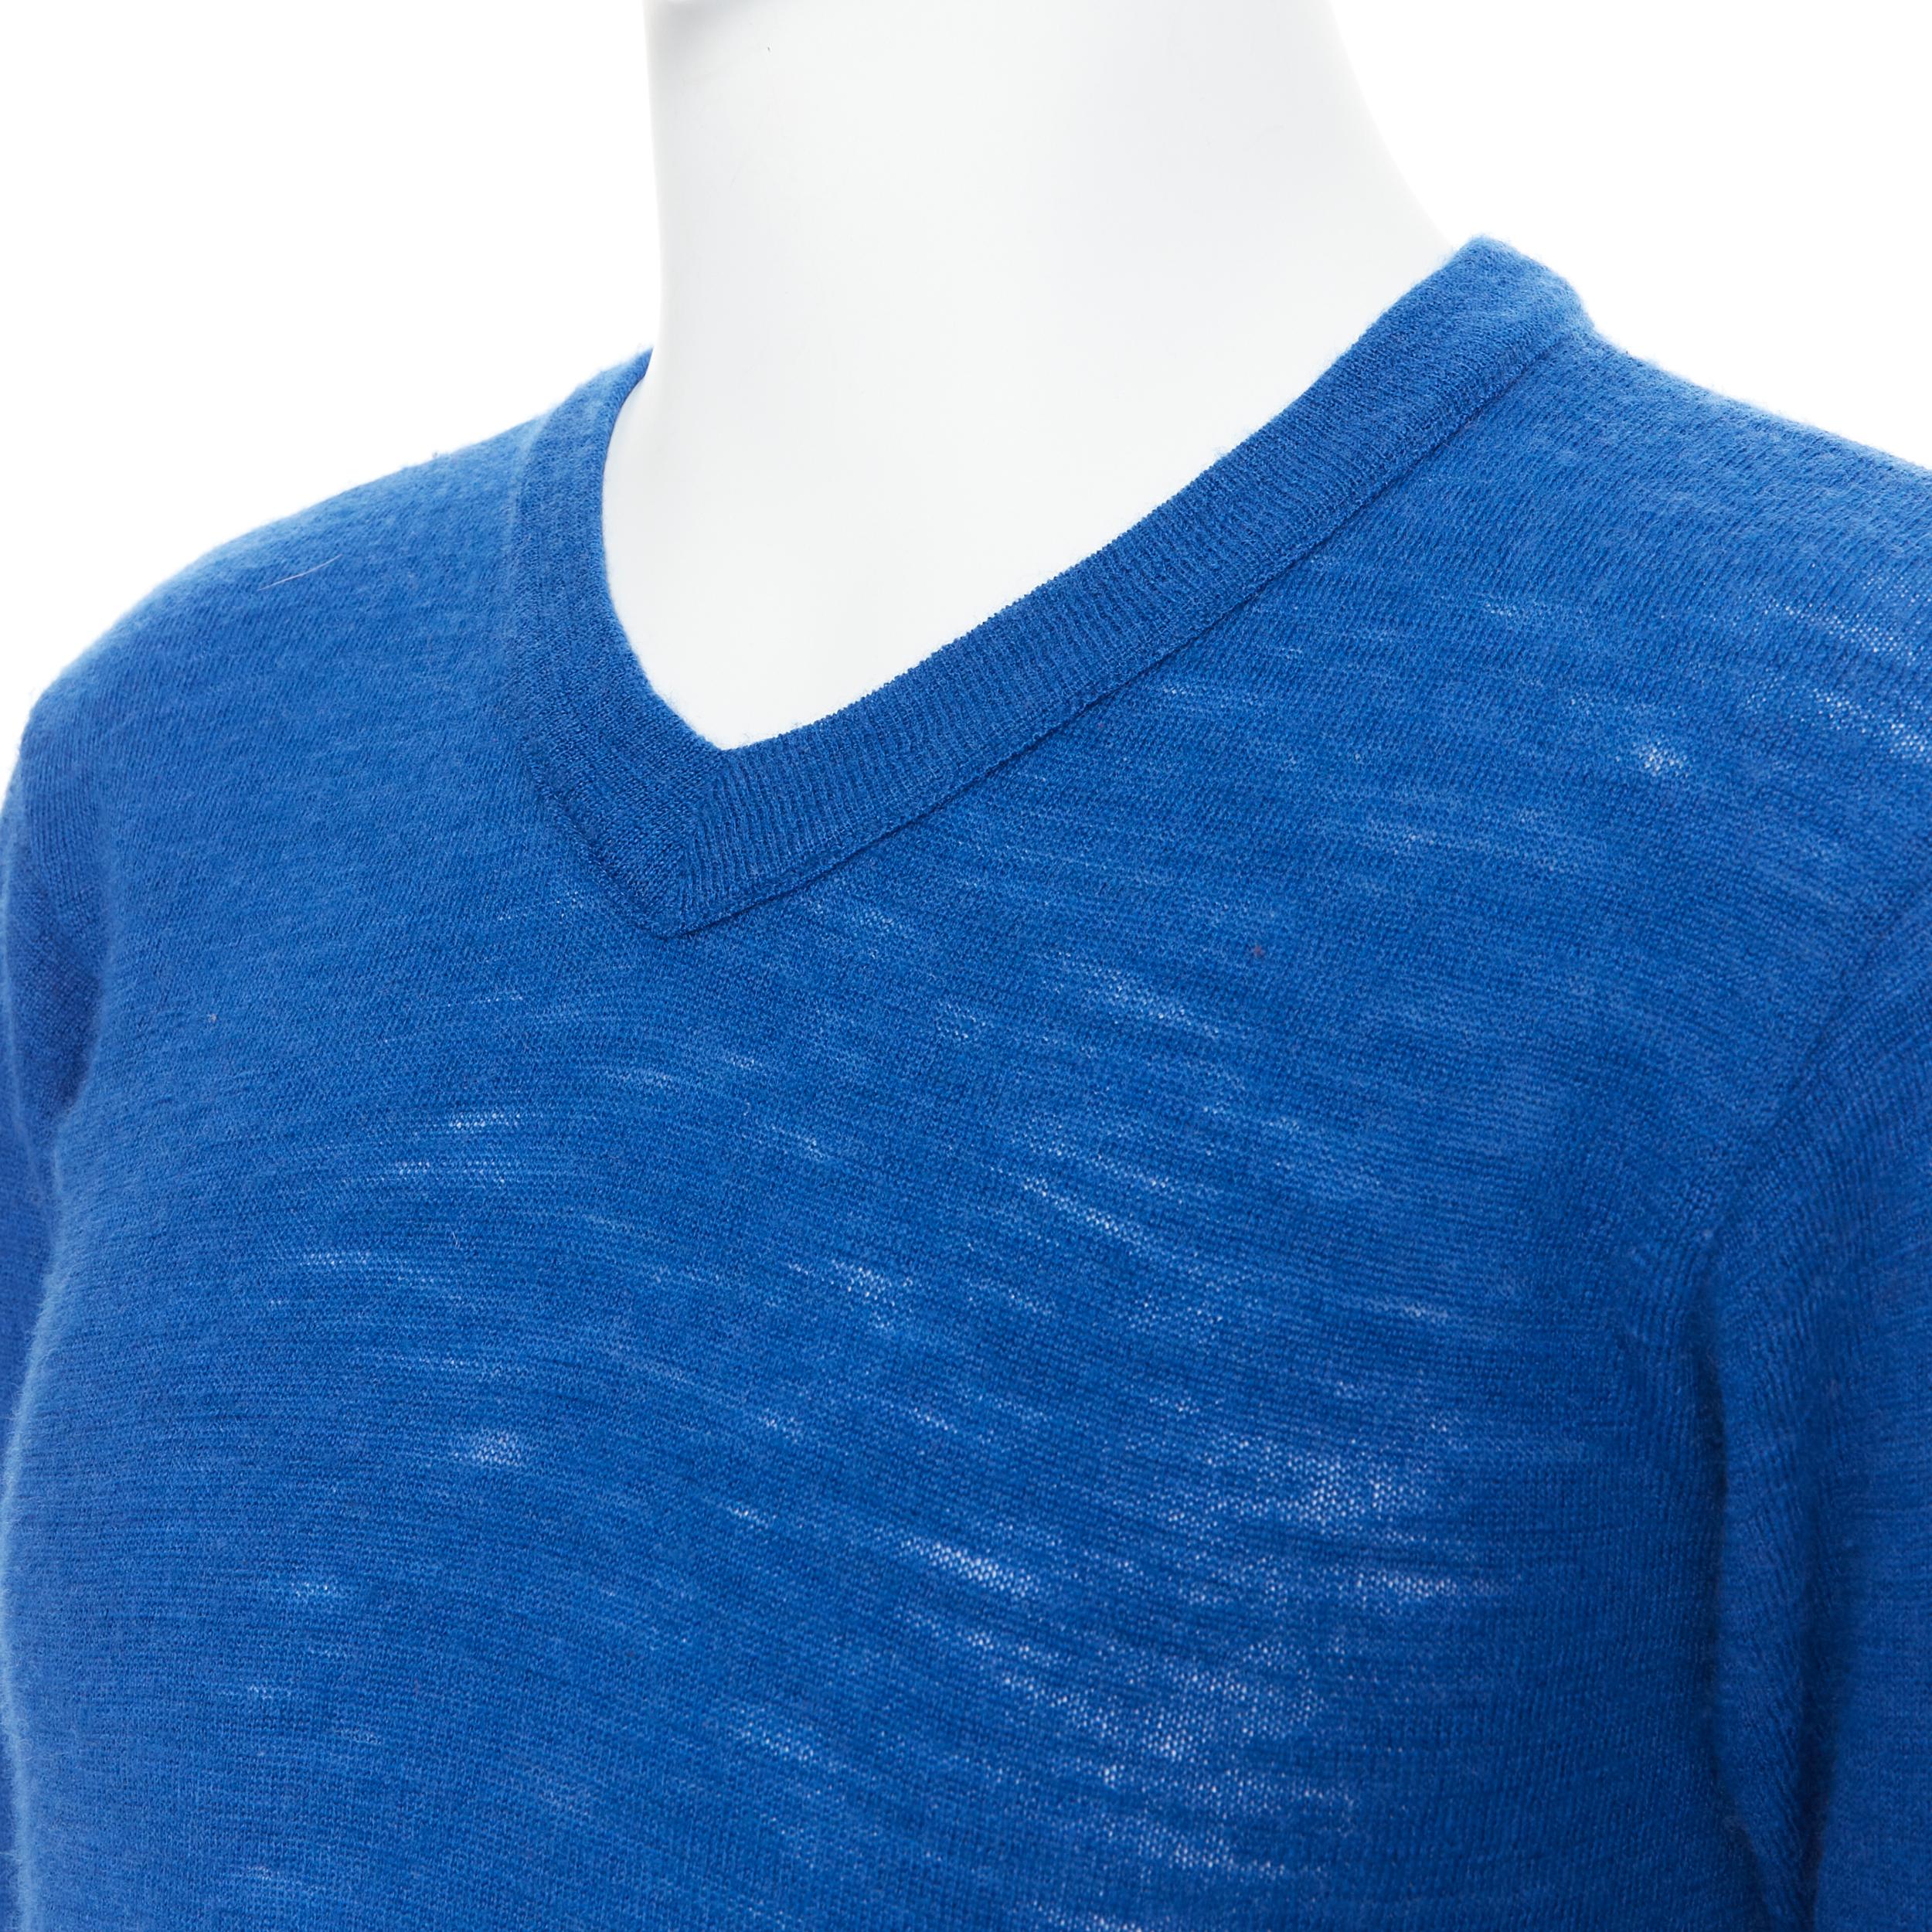 45R 100% Kobaltblauer Pullover mit langen Ärmeln und V-Ausschnitt aus Wolle Gr. 3 M 
Referenz: PRCN/A00083 
Marke: 45R 
MATERIAL: Wolle 
Farbe: Blau 
Muster: Solide 
Extra Detail: 100% Wolle Pullover. V-Ausschnitt. 
Hergestellt in: Japan 

ZUSTAND: